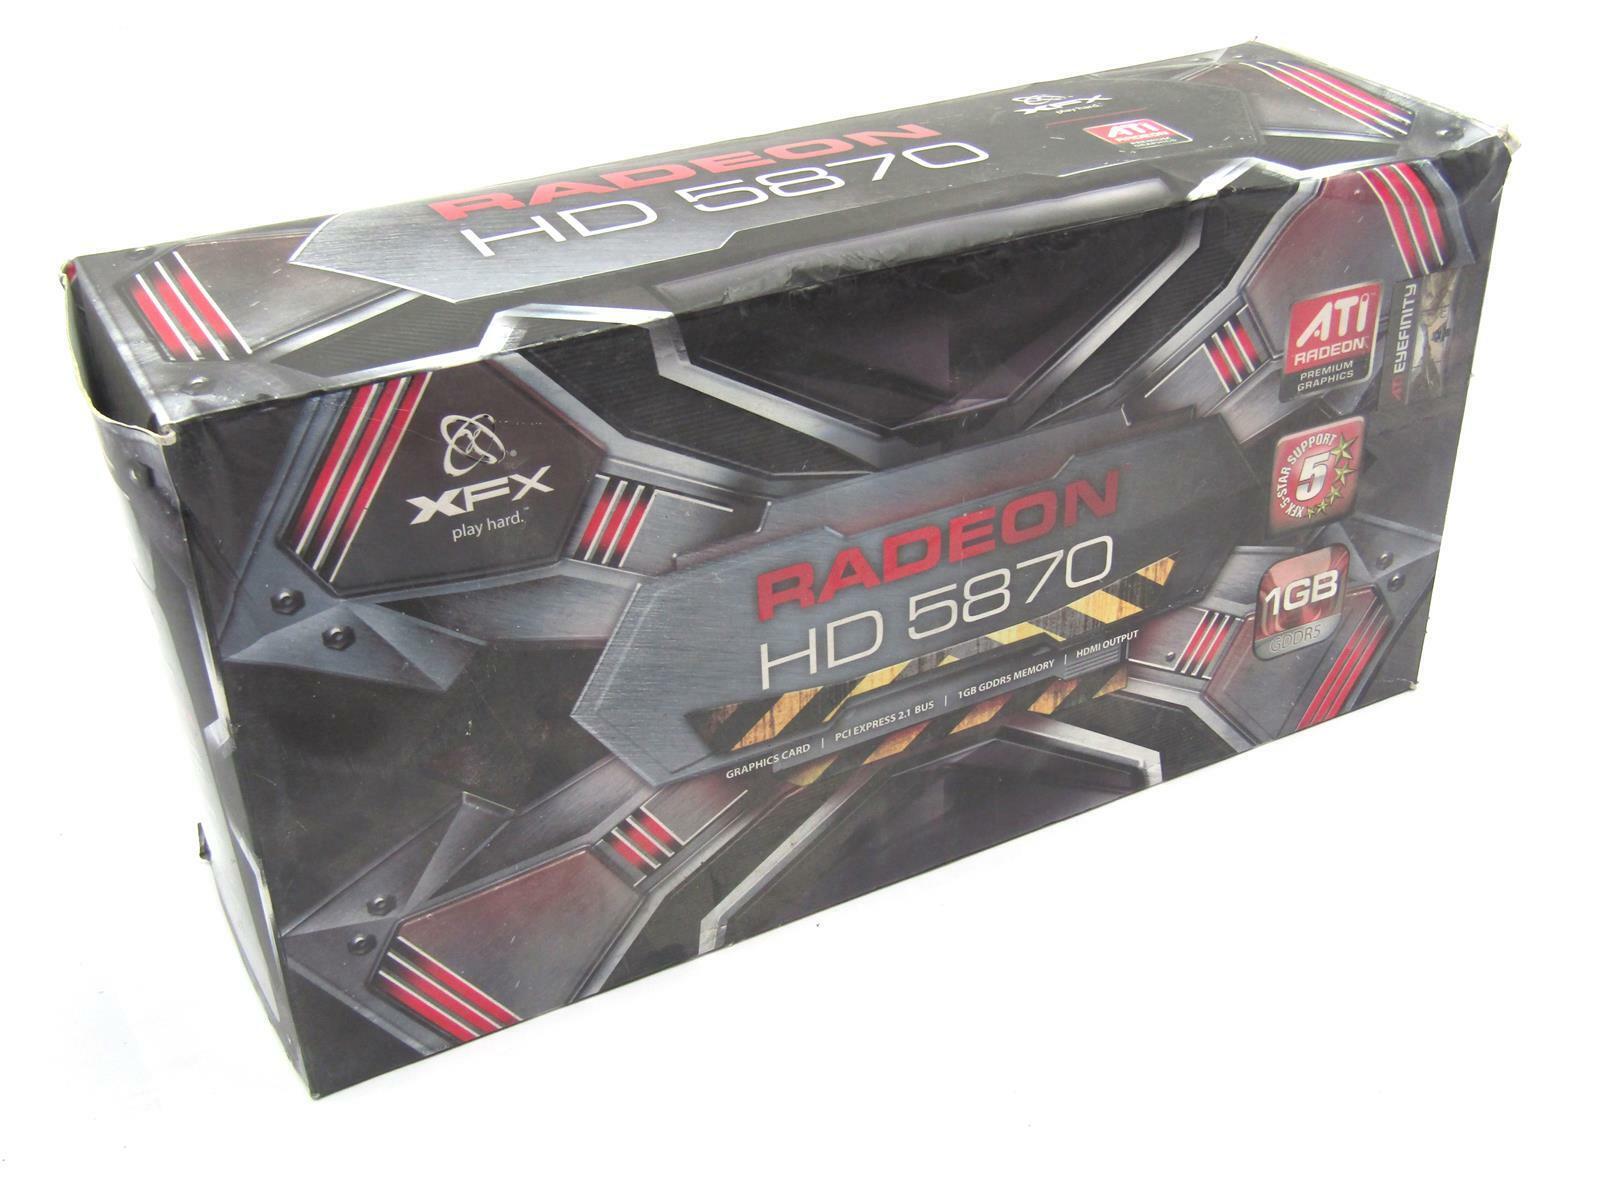 XFX Radeon HD 5870 PCIe X16 2.0 256-Bit Graphics Card | 1GB GDDR5 1200MHz